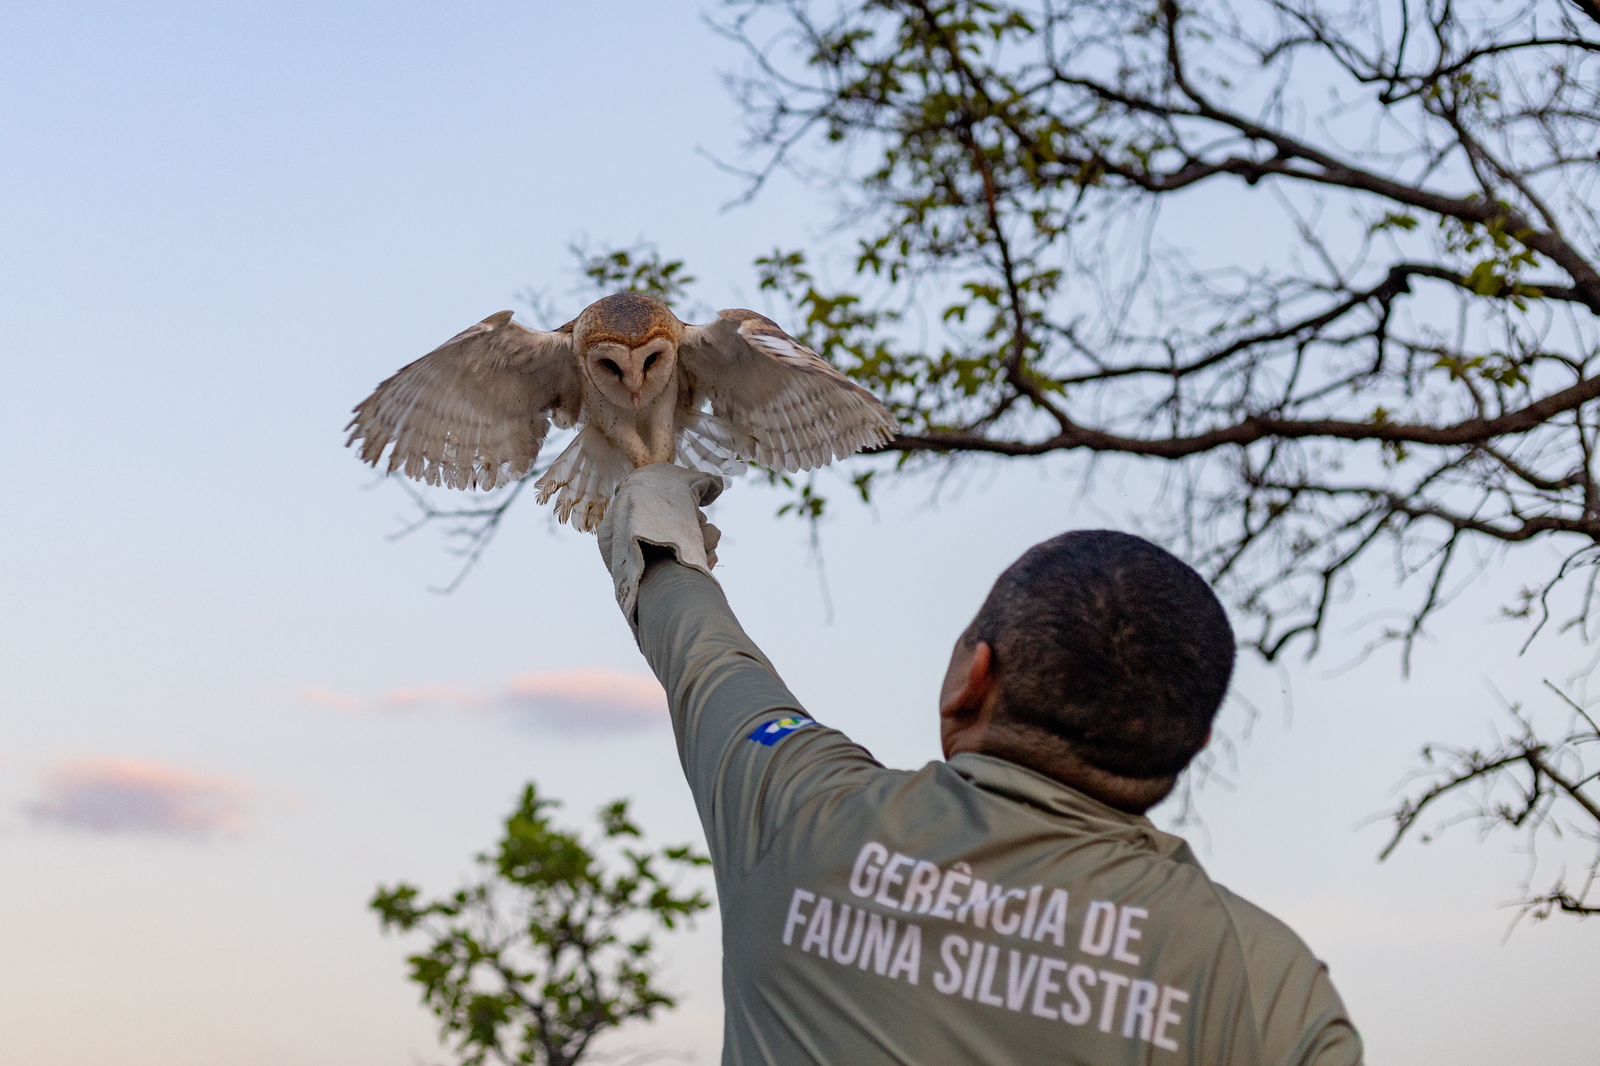 Após tratamento adequado e completa reabilitação, as aves puderam voltar ao seu habitat natural.               Crédito - Karla Silva/ Sema-MT